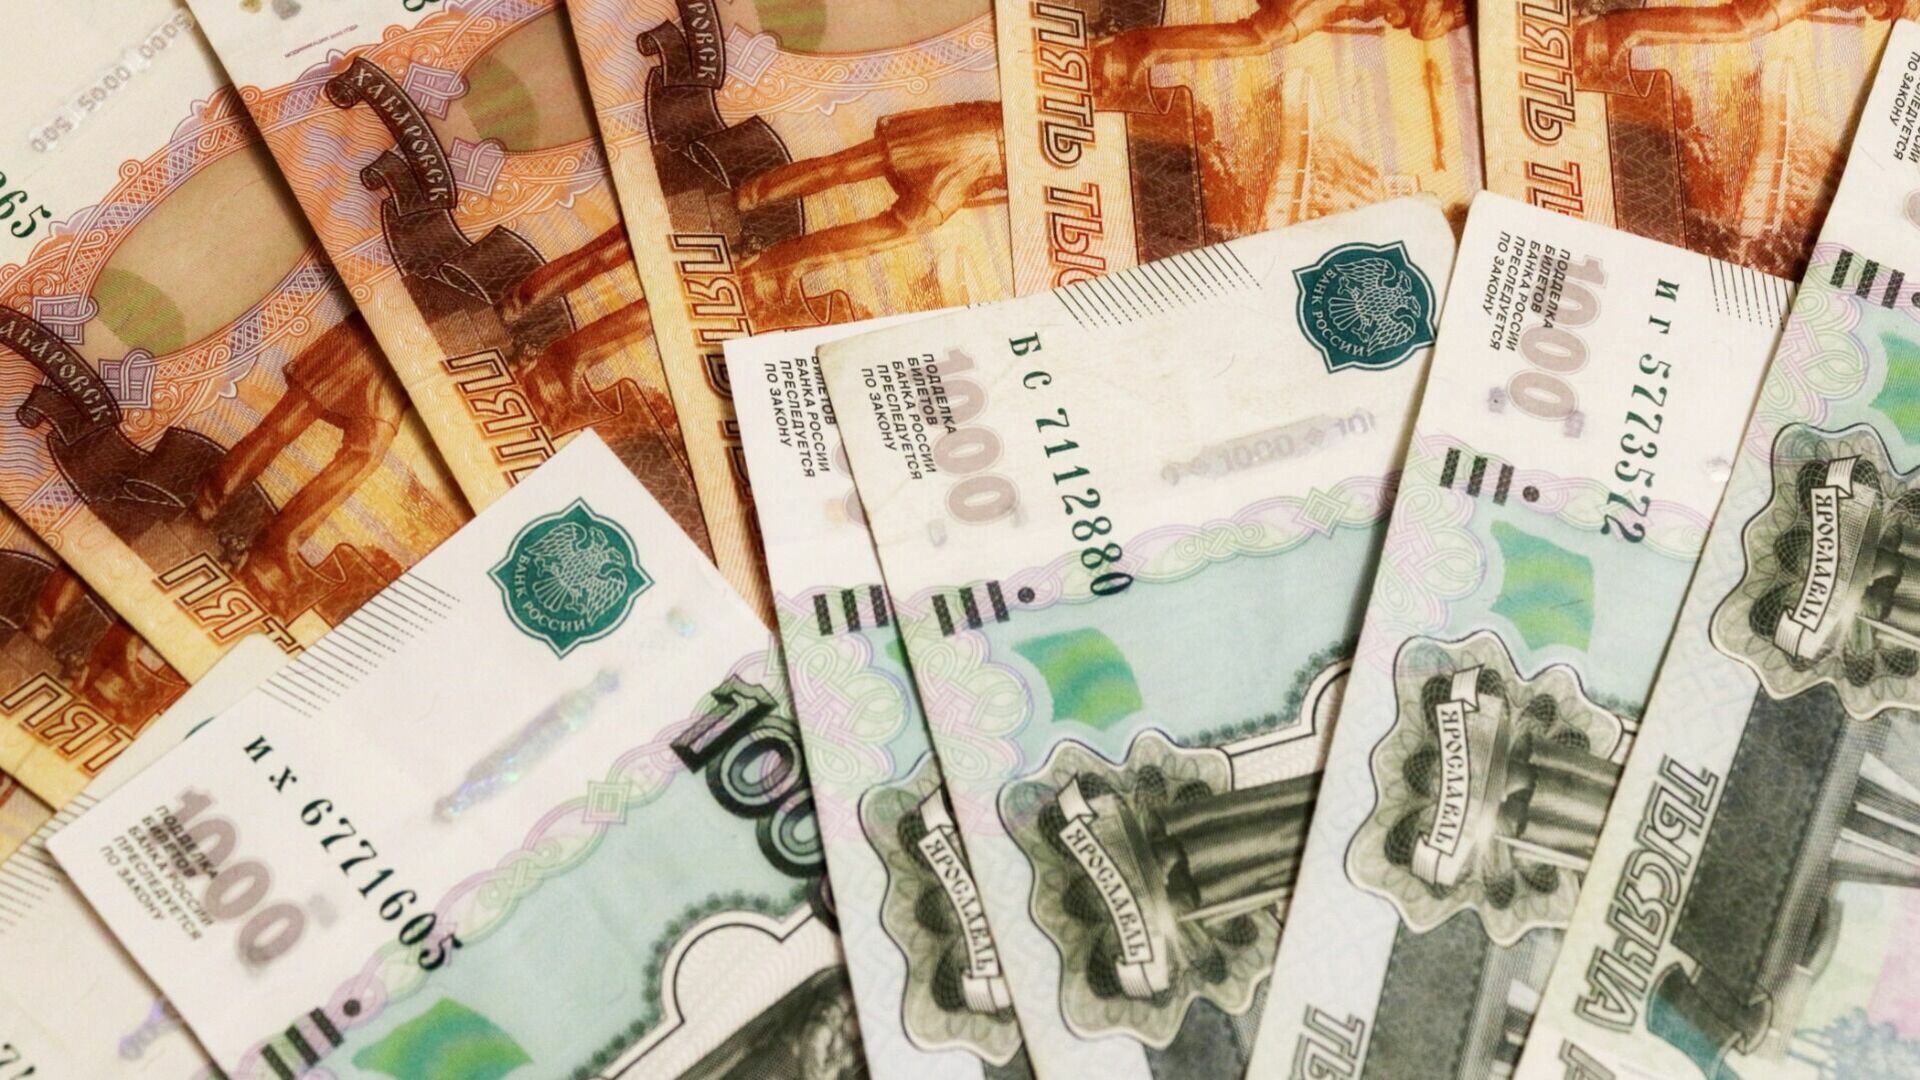 Доверчивый оренбуржец перевёл мошенникам около 700 тысяч рублей